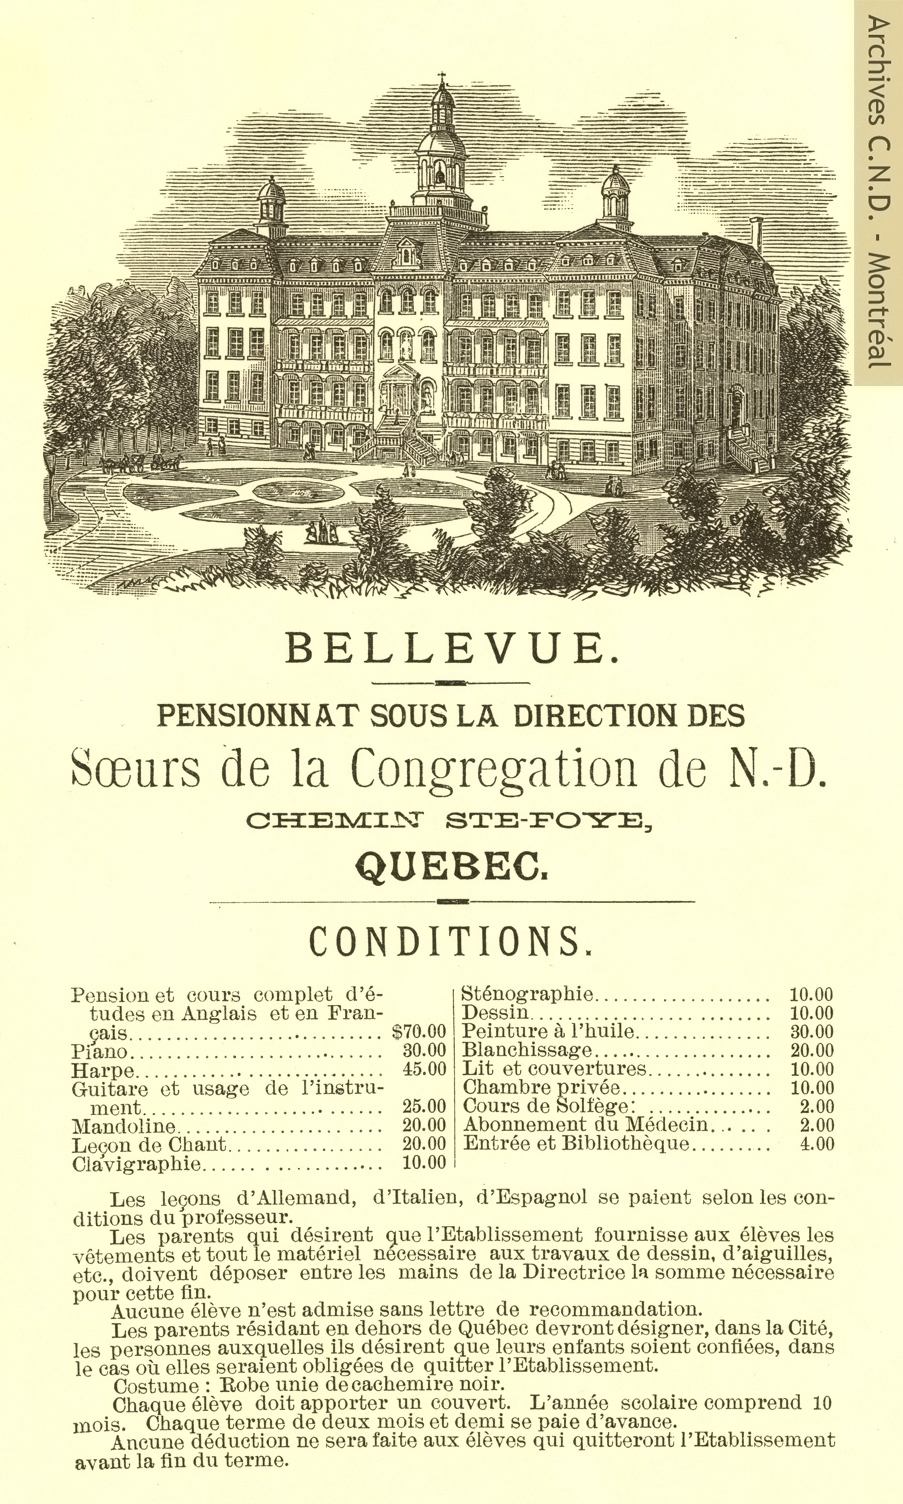 Prospectus du pensionnat Notre-Dame-de-Bellevue